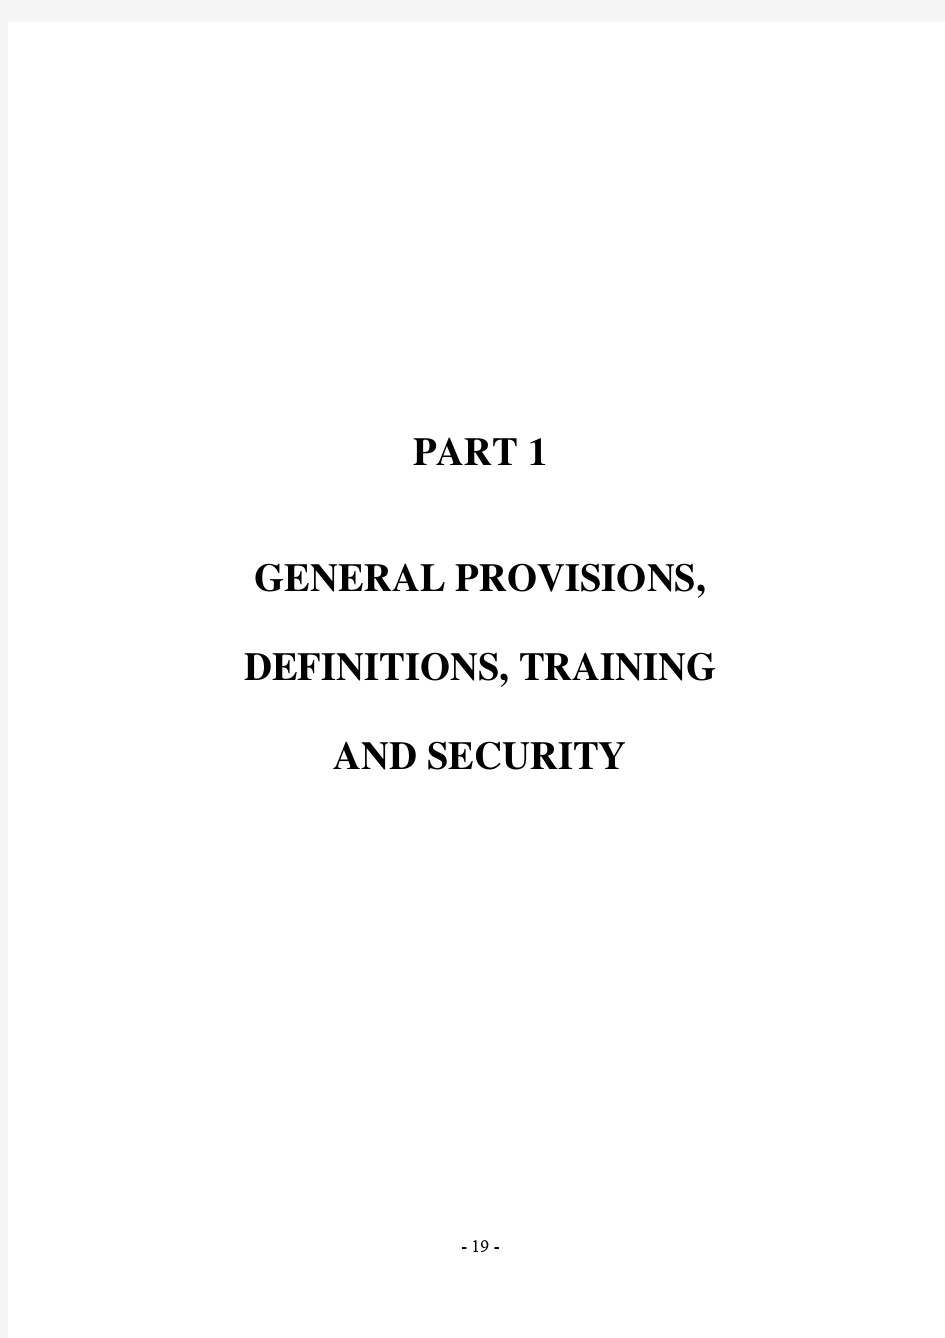 关于国际危险货物运输的建议书试验和标准手册  标准和试验手册(英文)2007  01E_Part1